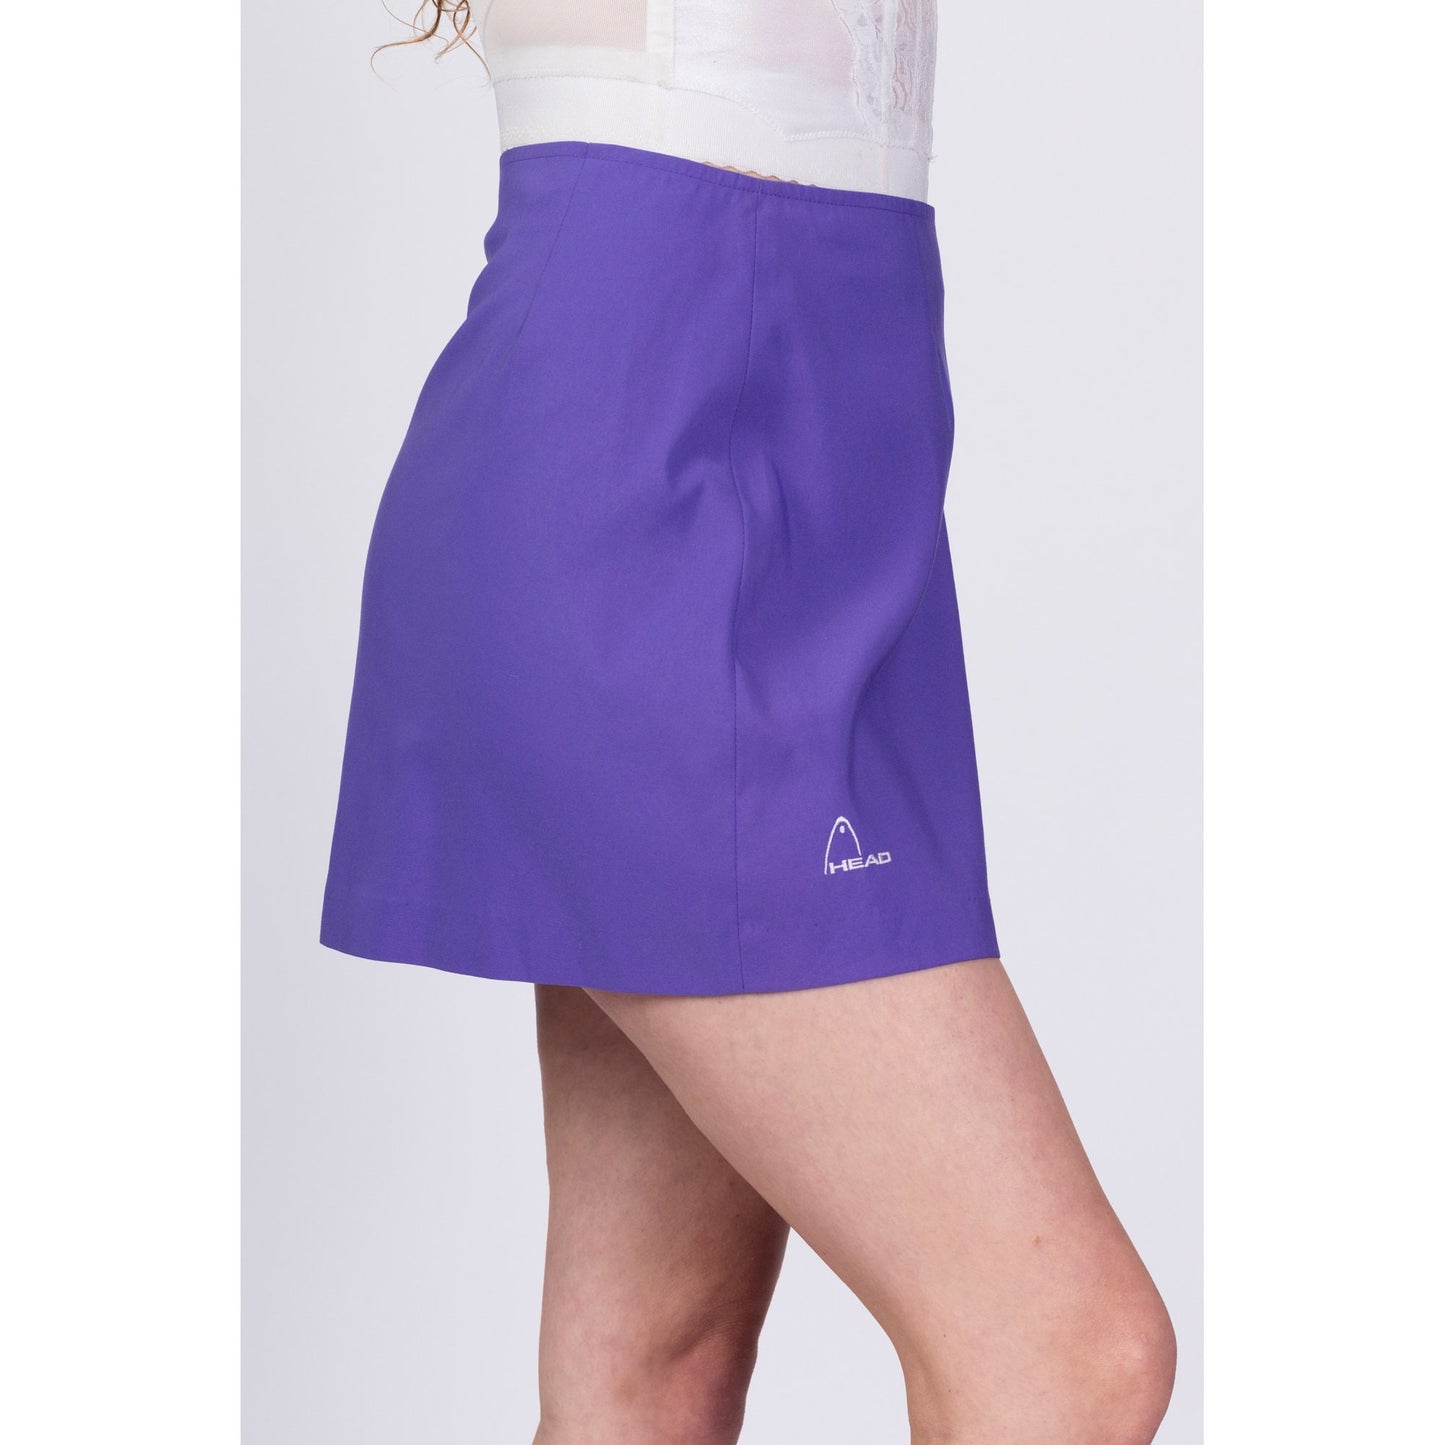 Vintage Purple Tennis Mini Skirt - Medium, 28" 